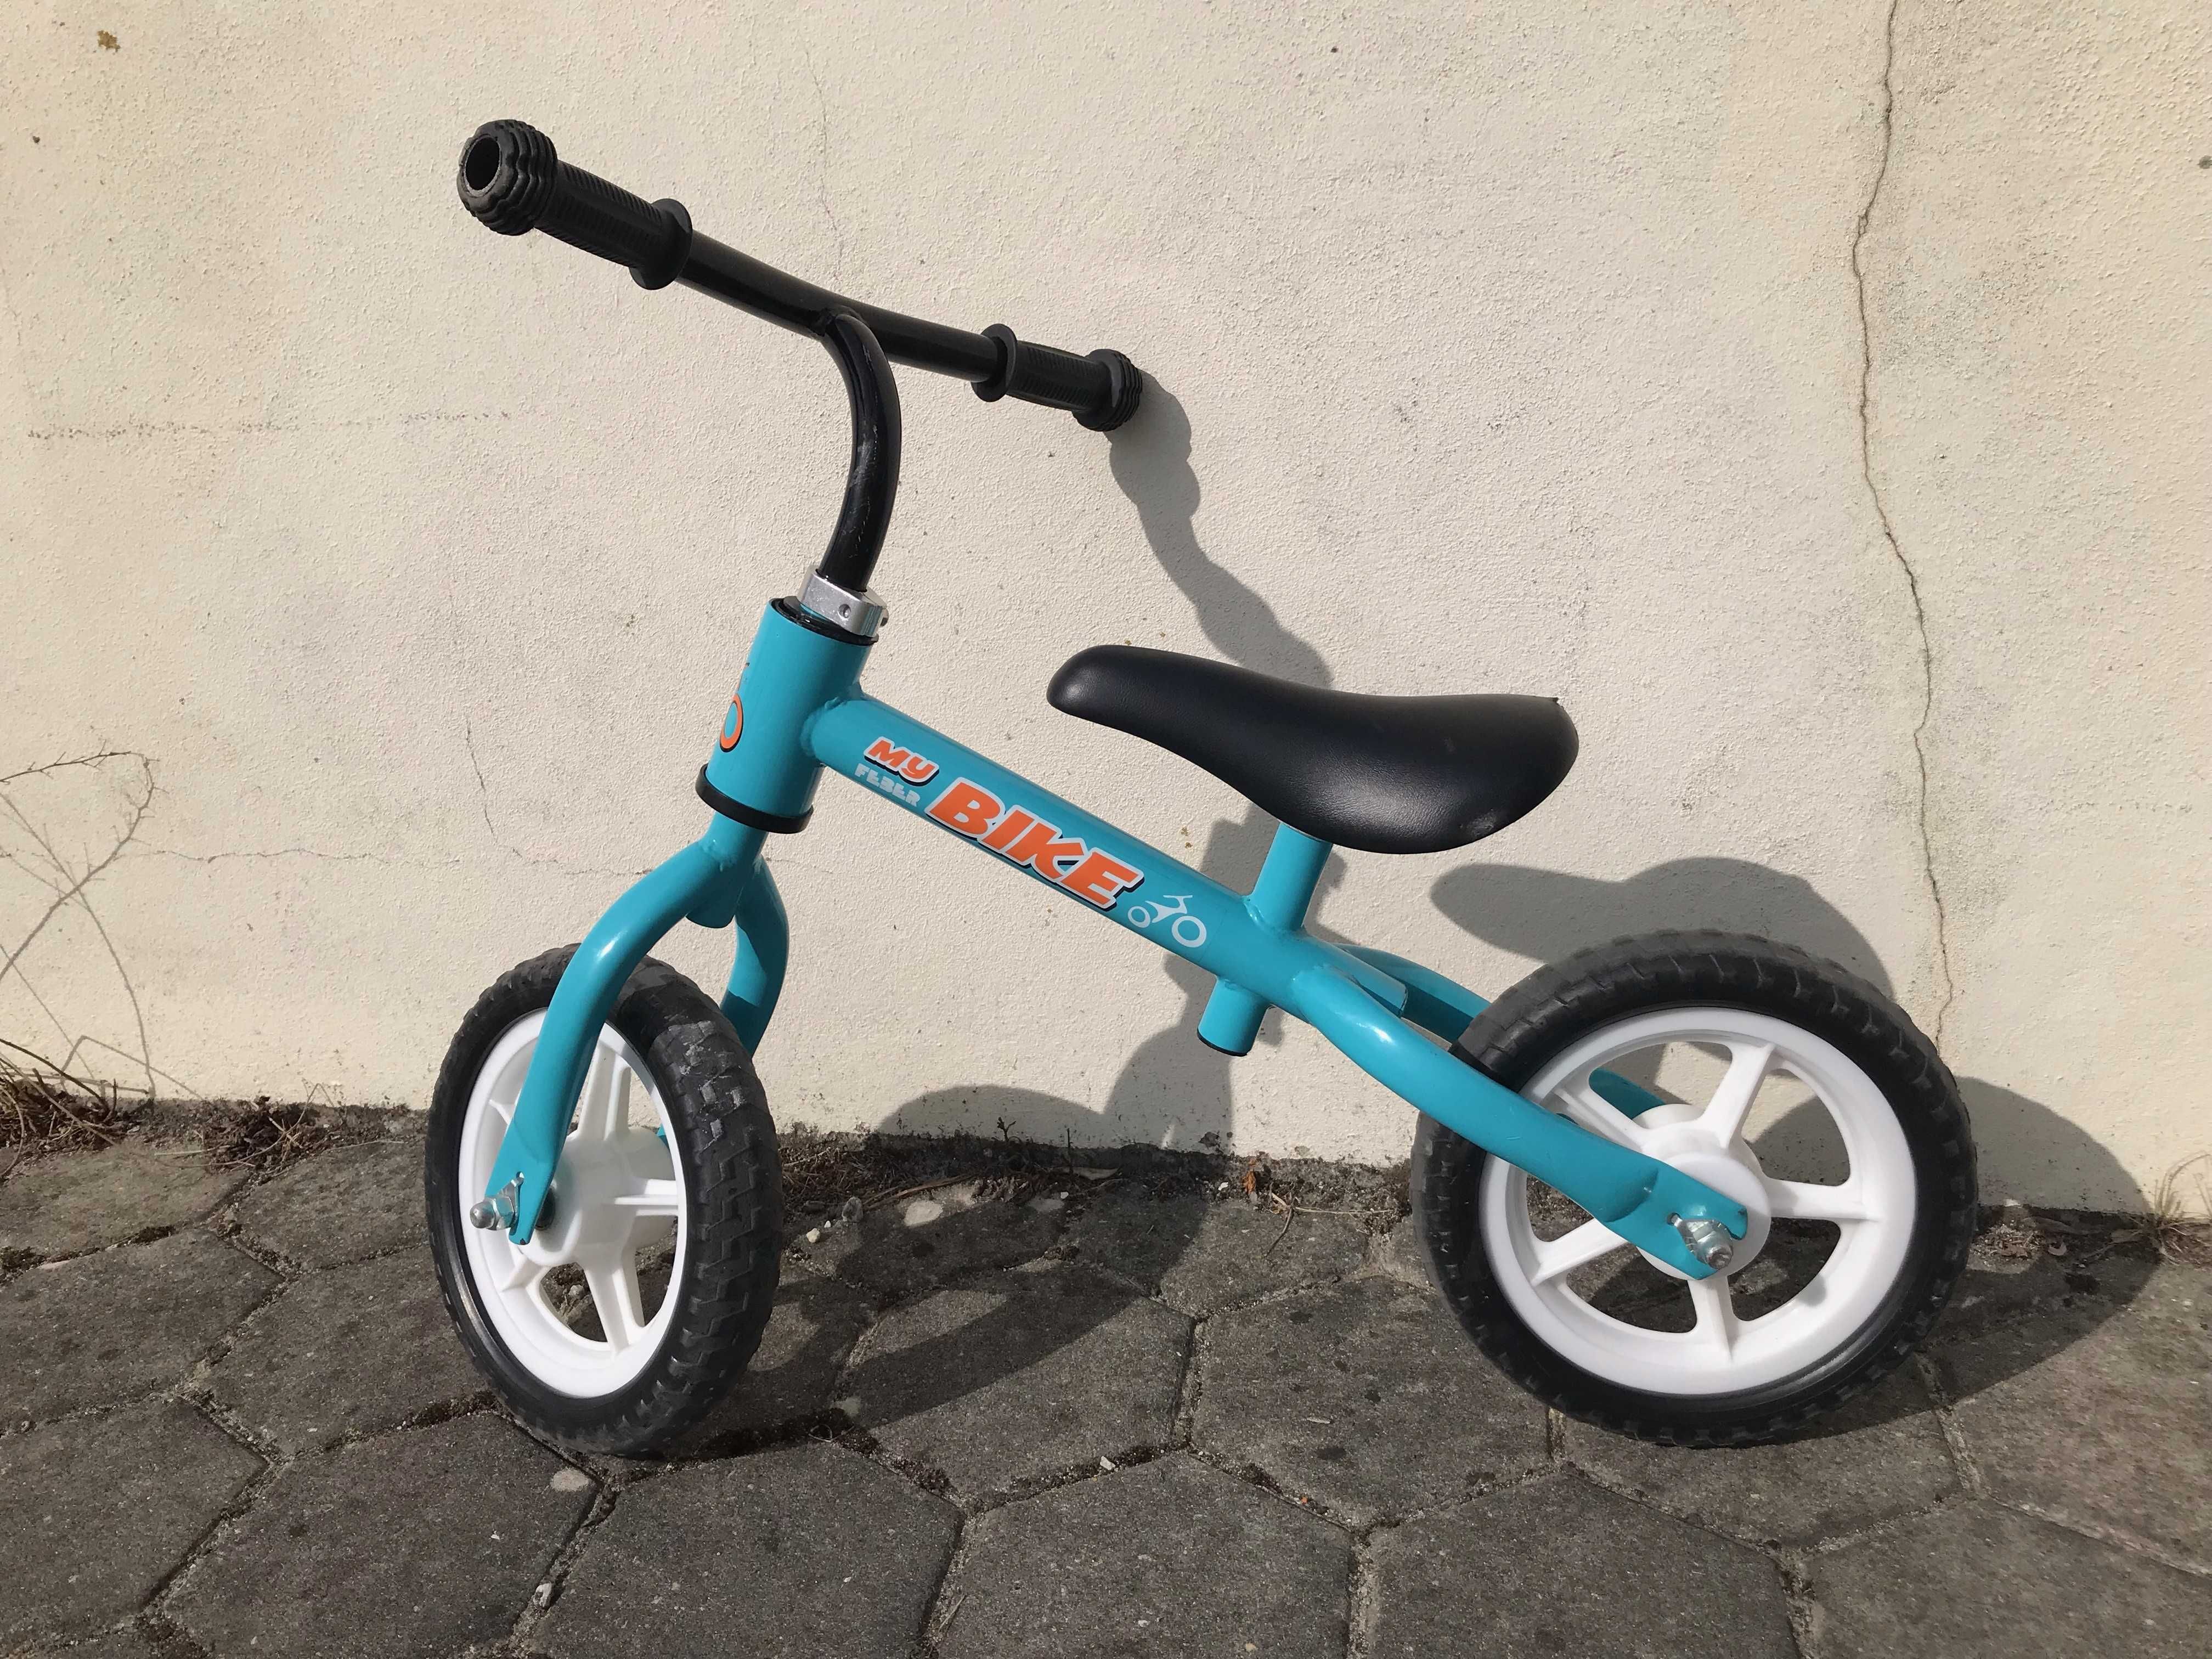 Bicicleta sem pedais - de aprendizagem - Feber - My bike - azul